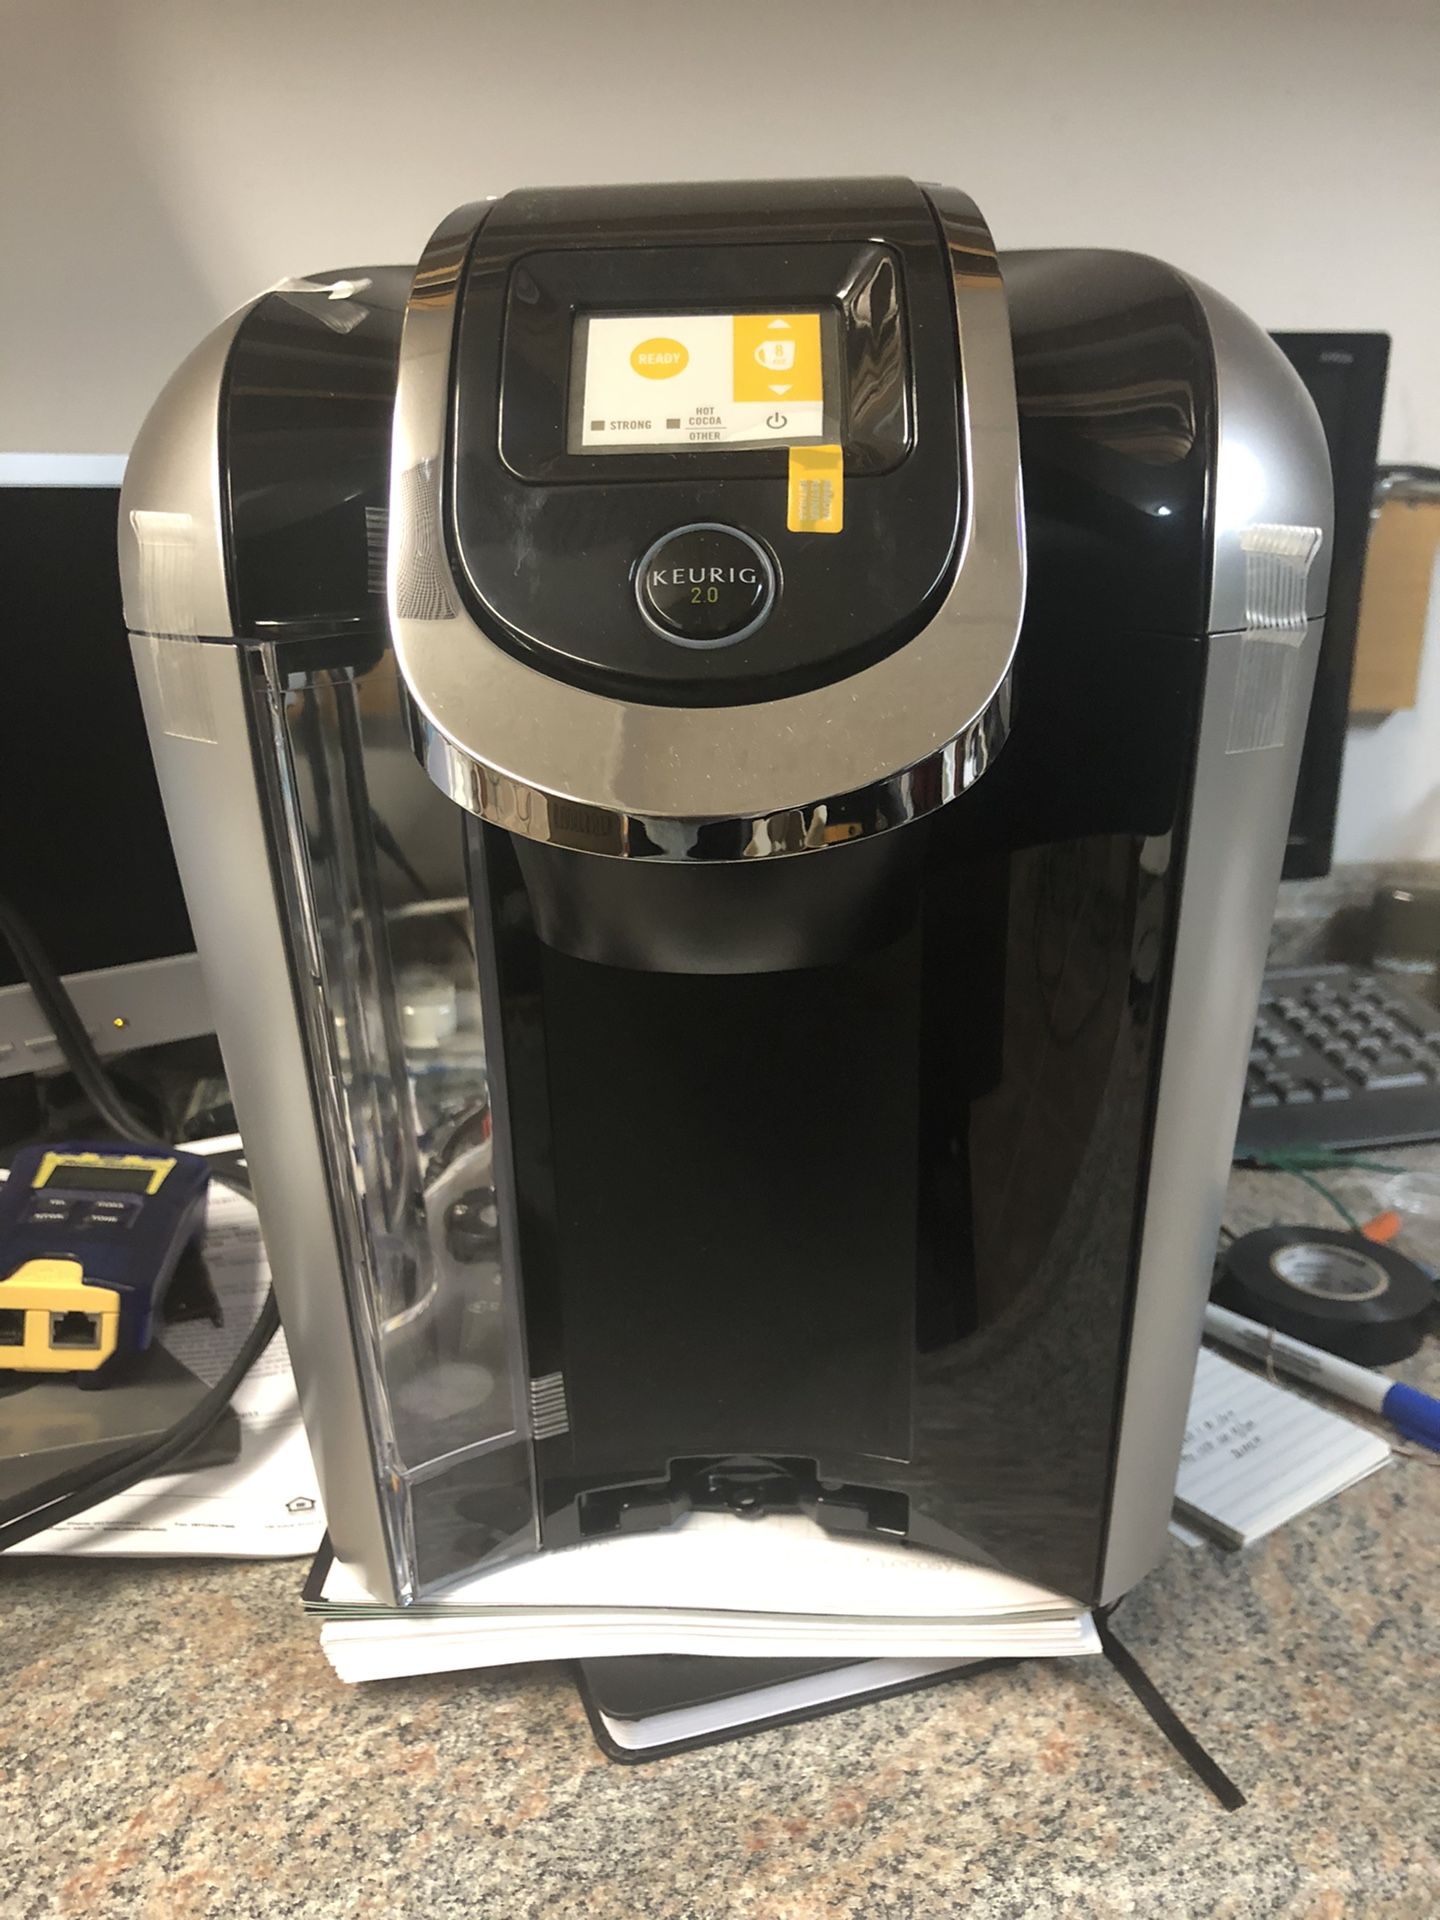 Keurig 2.0 coffee maker